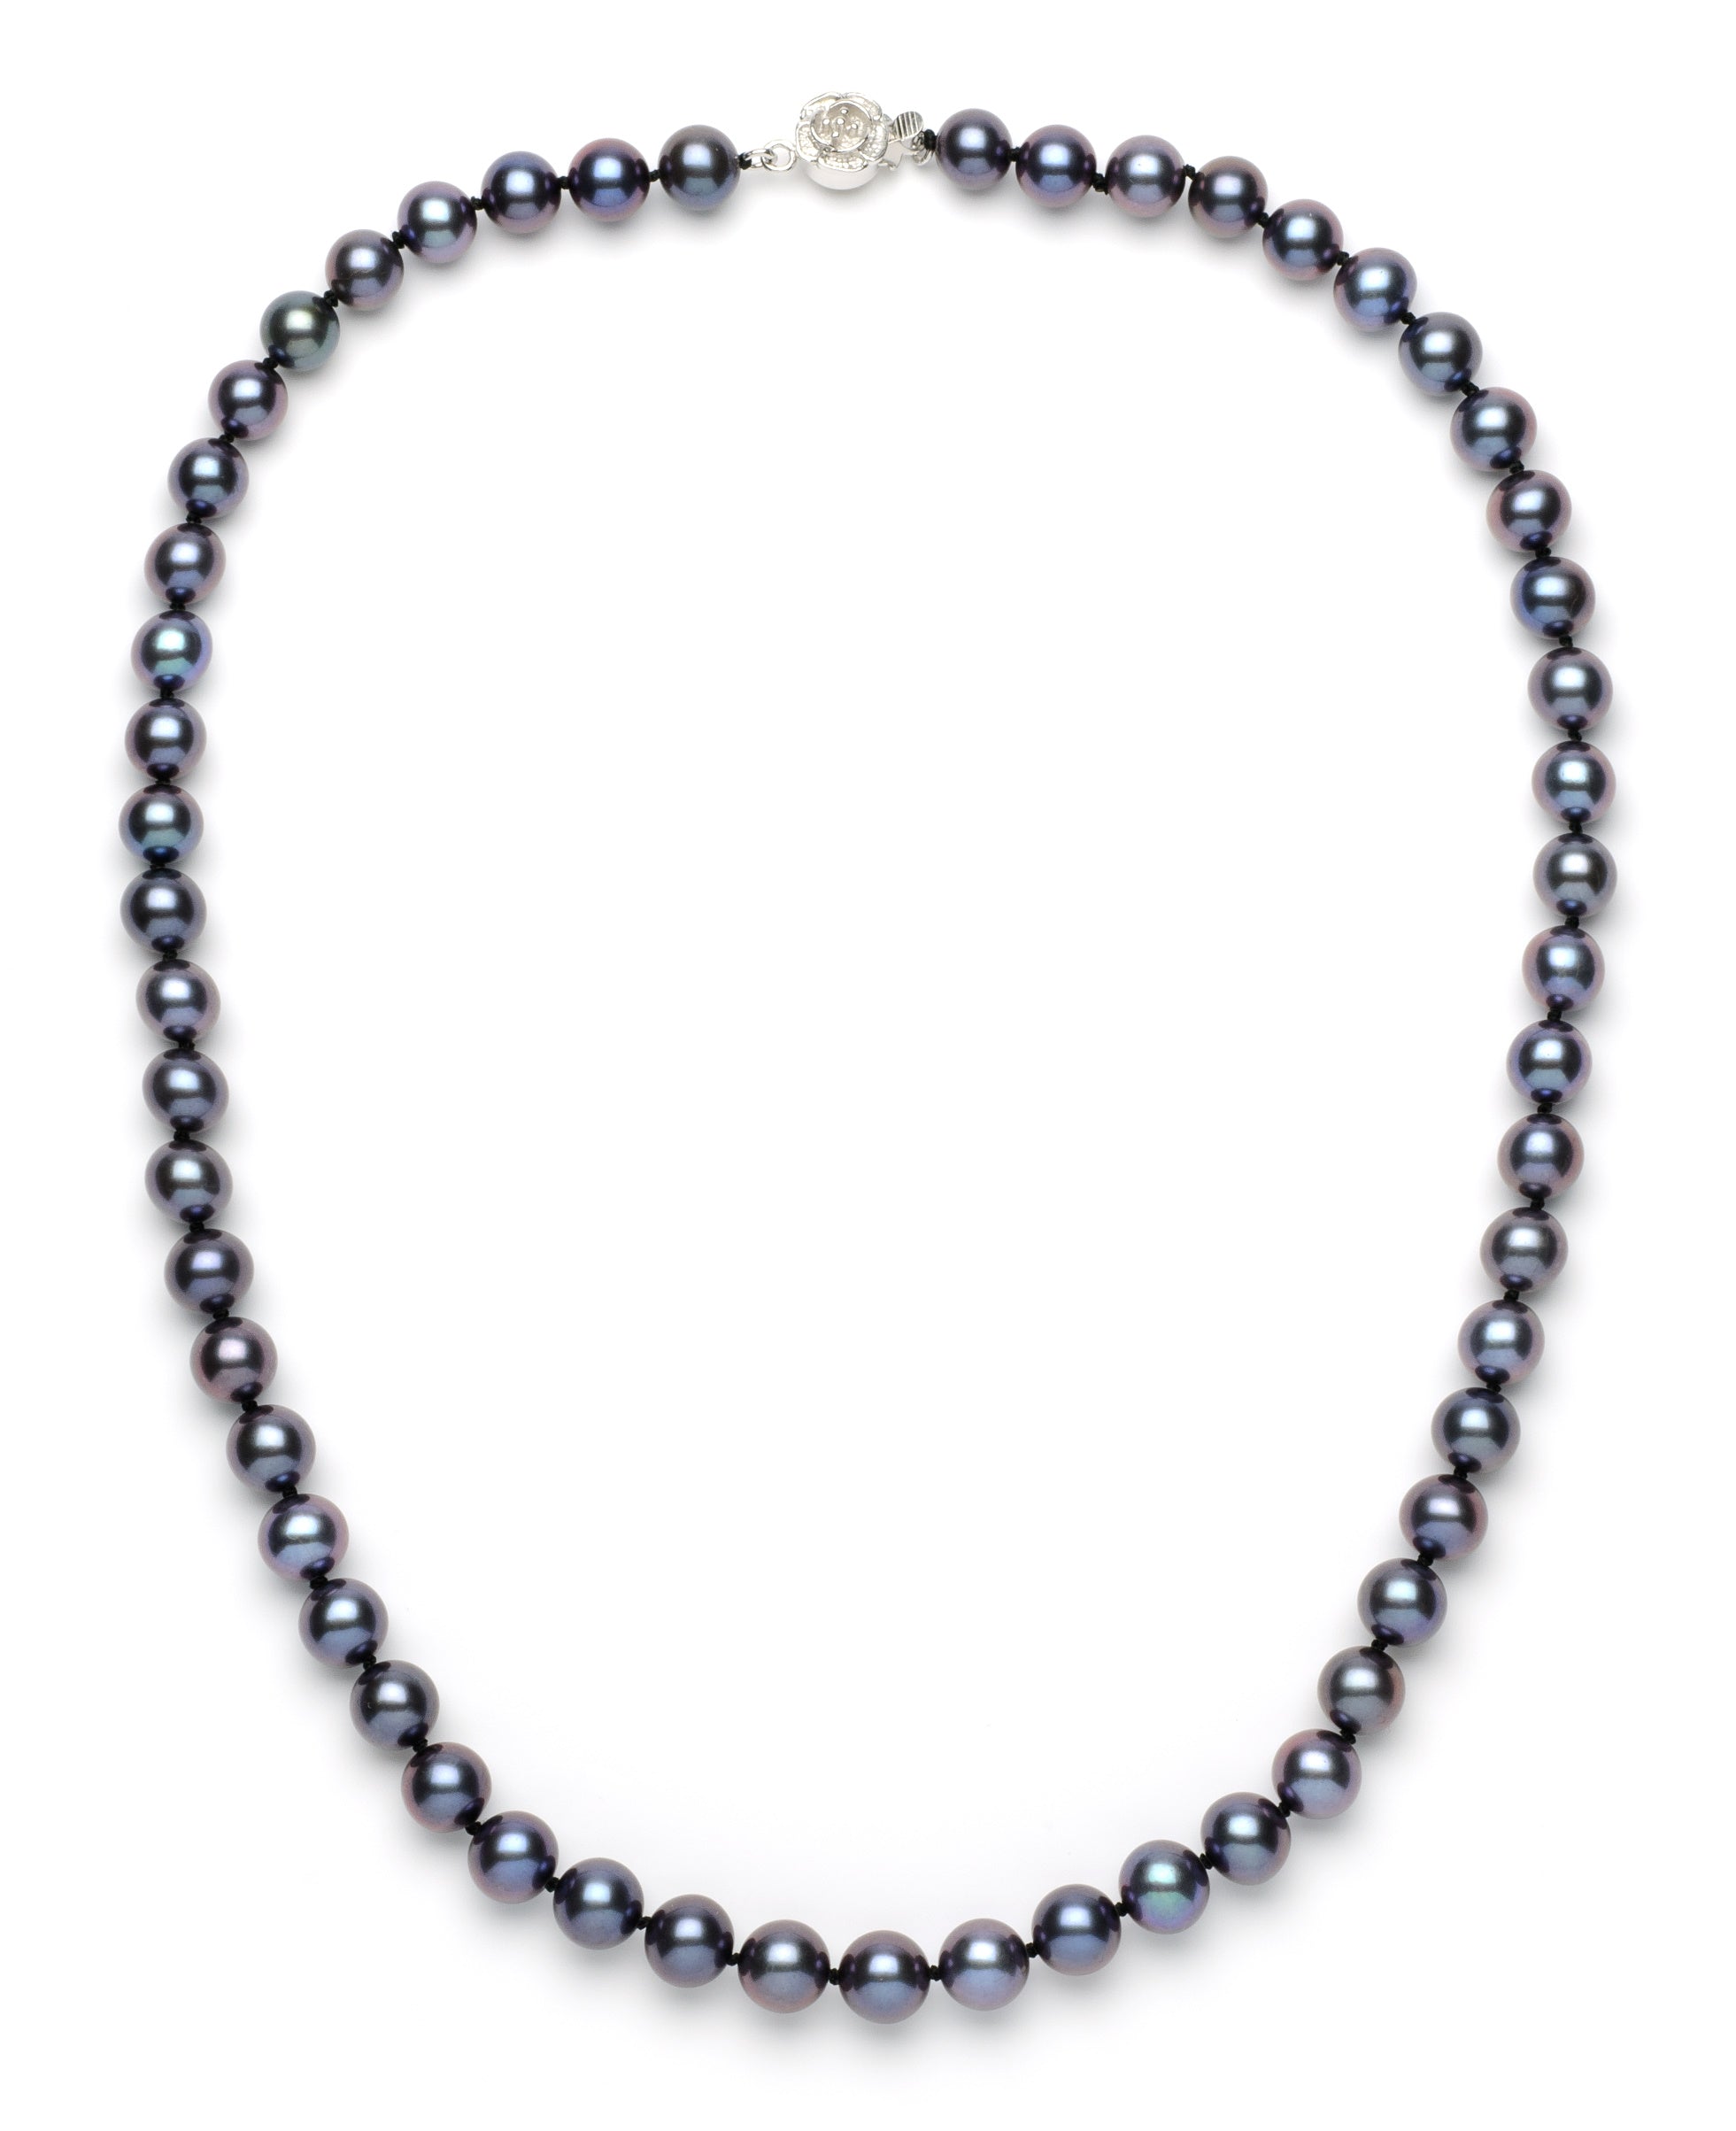 Necklace/Bracelet Set 8.0-9.0 mm Black Freshwater Pearls